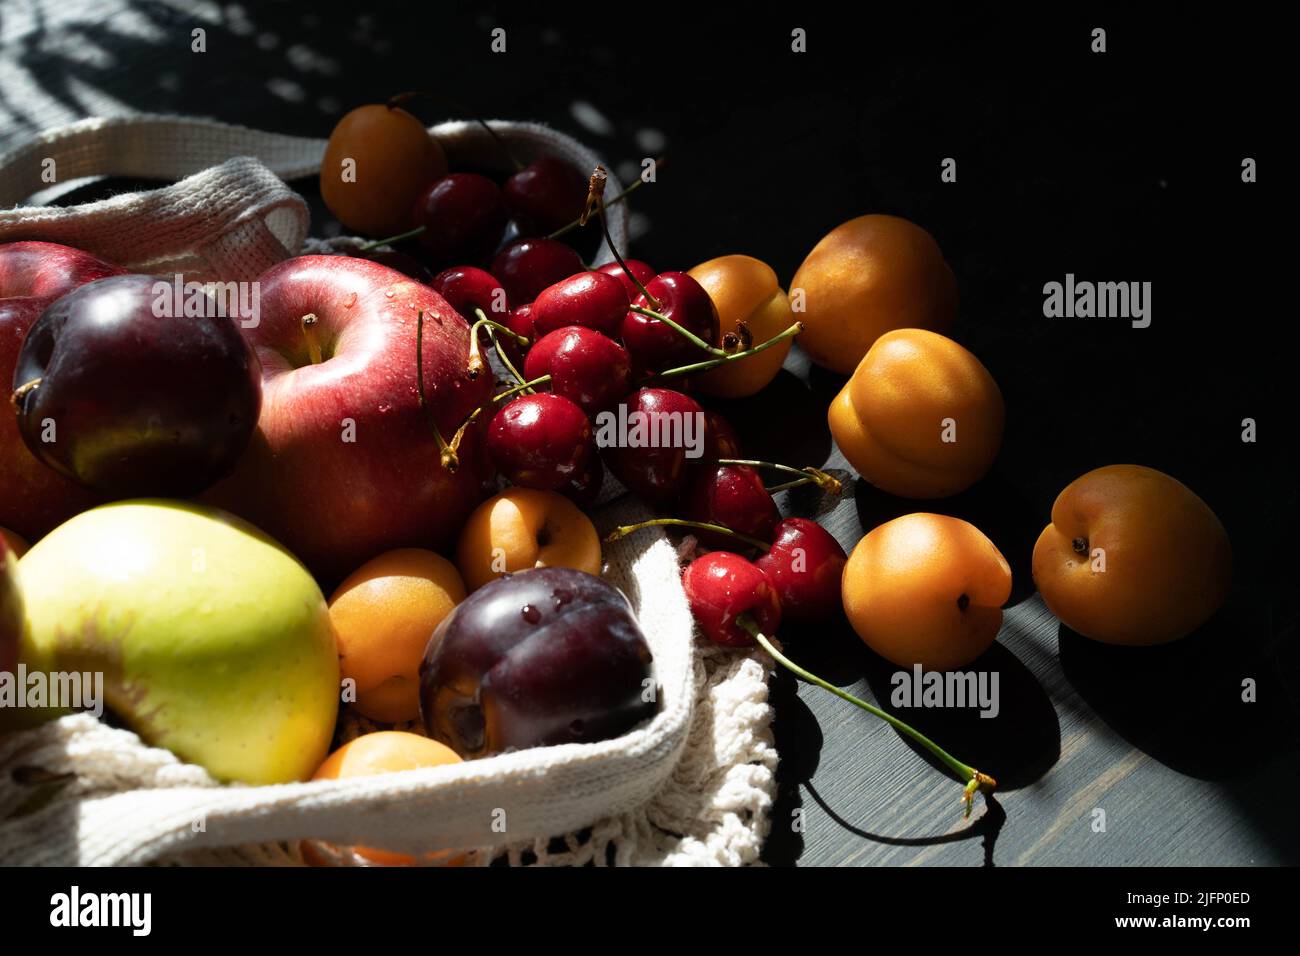 Frische reife Früchte und Beeren auf schwarzem Holzhintergrund in einem ökologischen Netzbeutel. Lifestyle. Harte Schatten.Sonnenlicht. Speicherplatz kopieren. Stockfoto